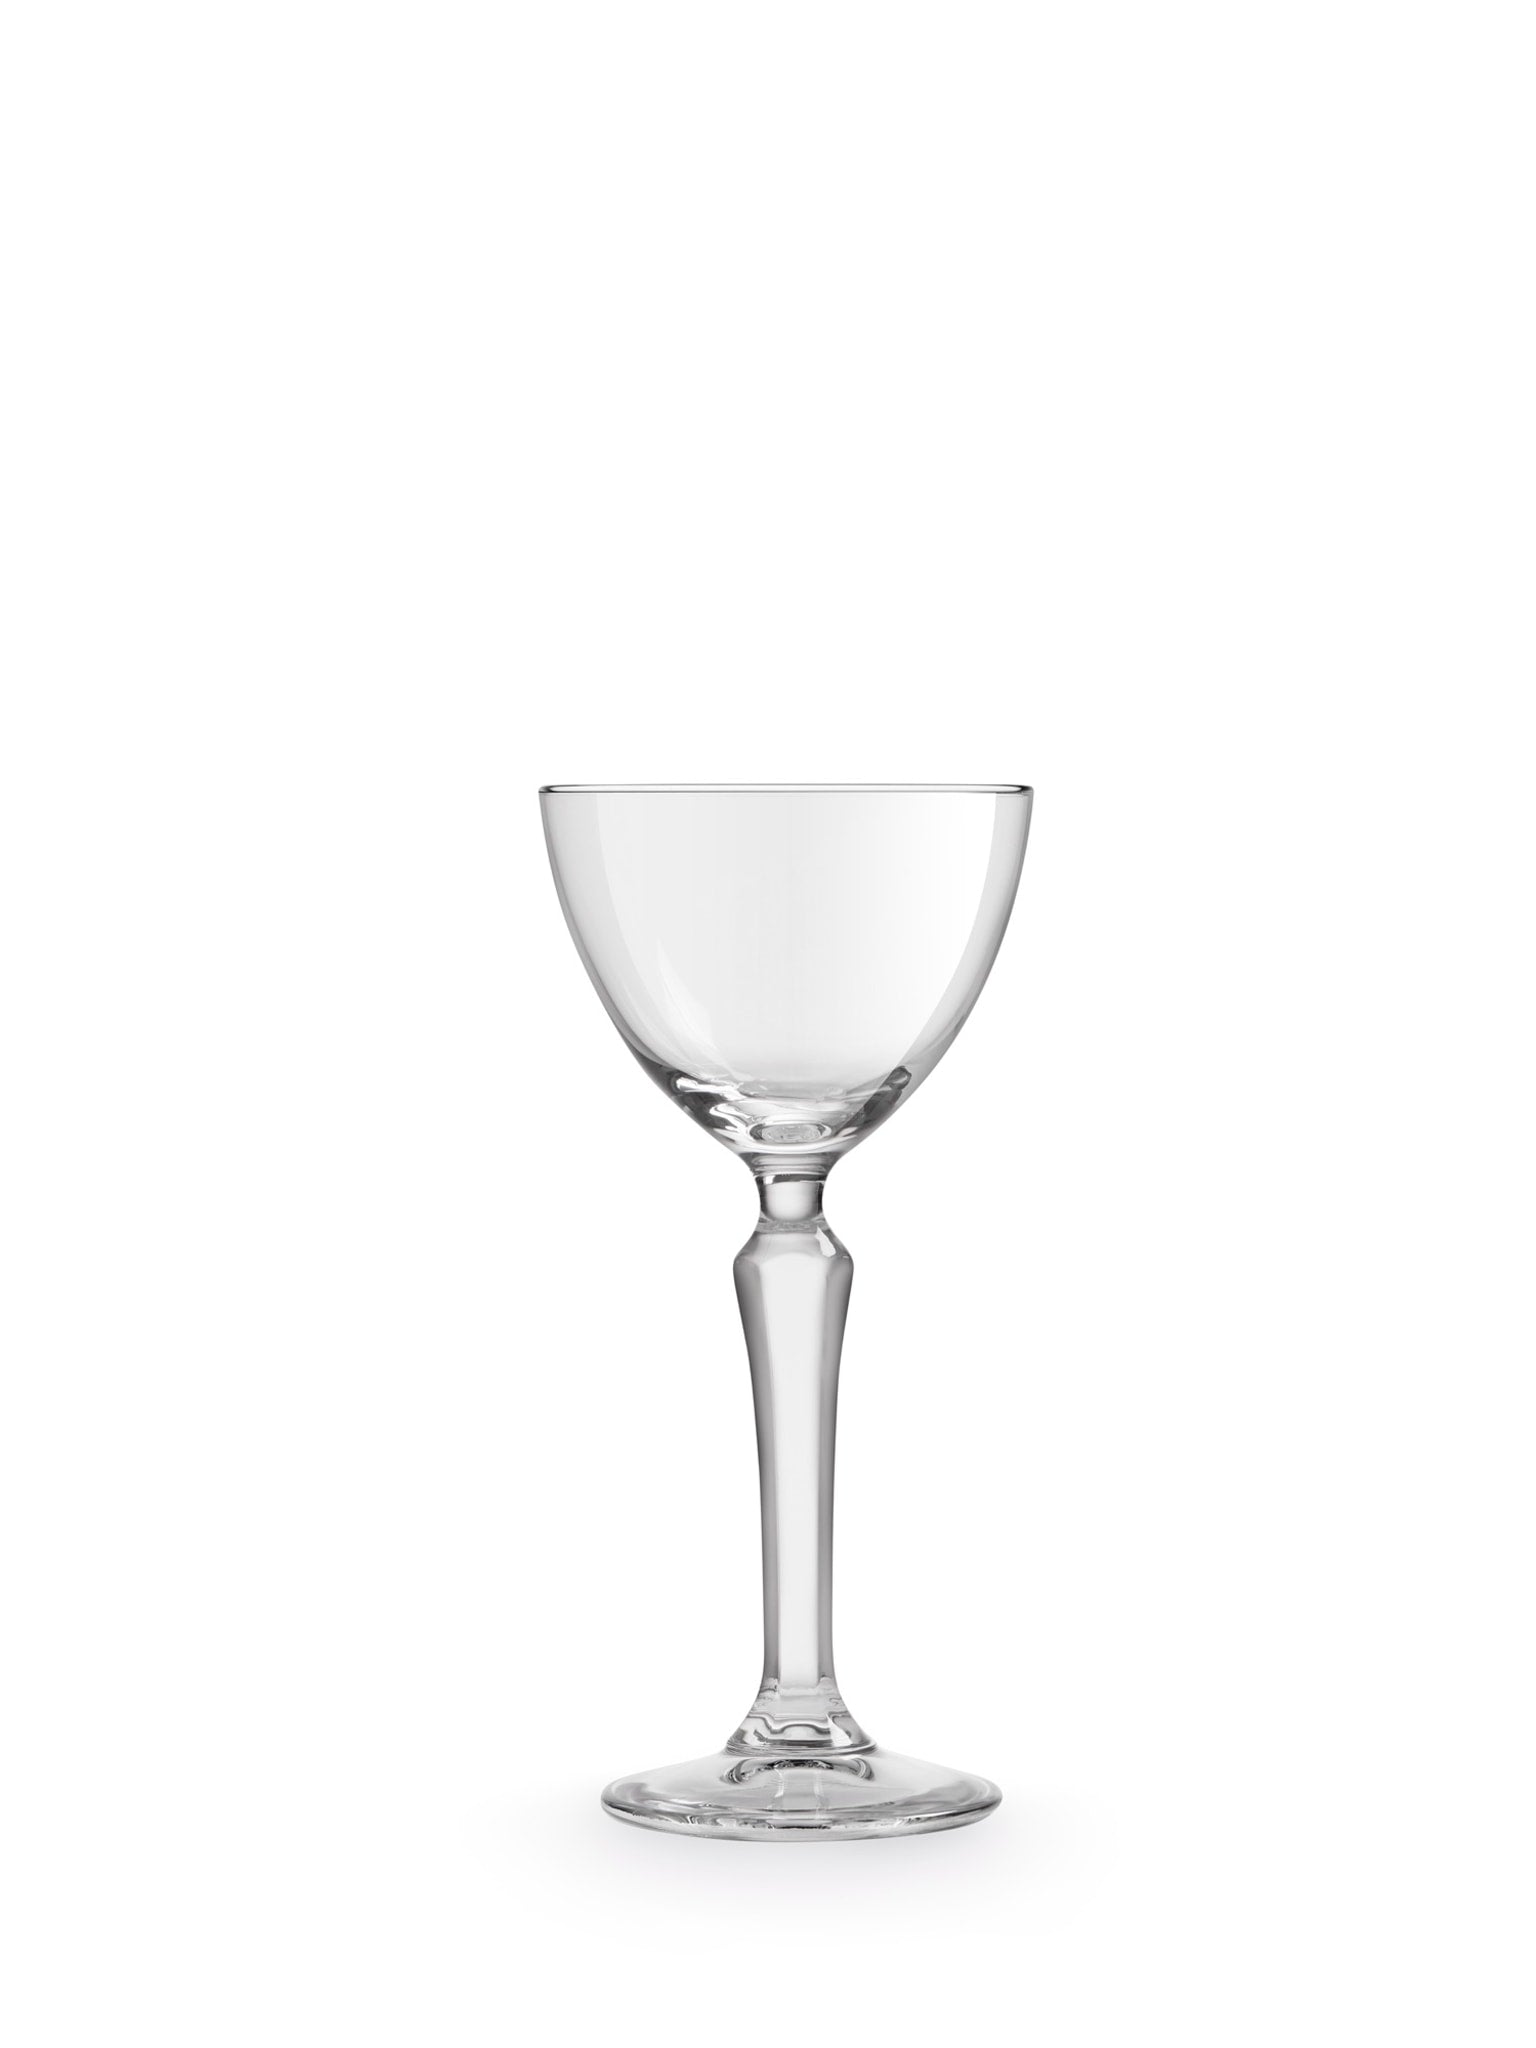 SPKSY Nick & Nora-glas - et elegant valg til servering af dine cocktails med stil.